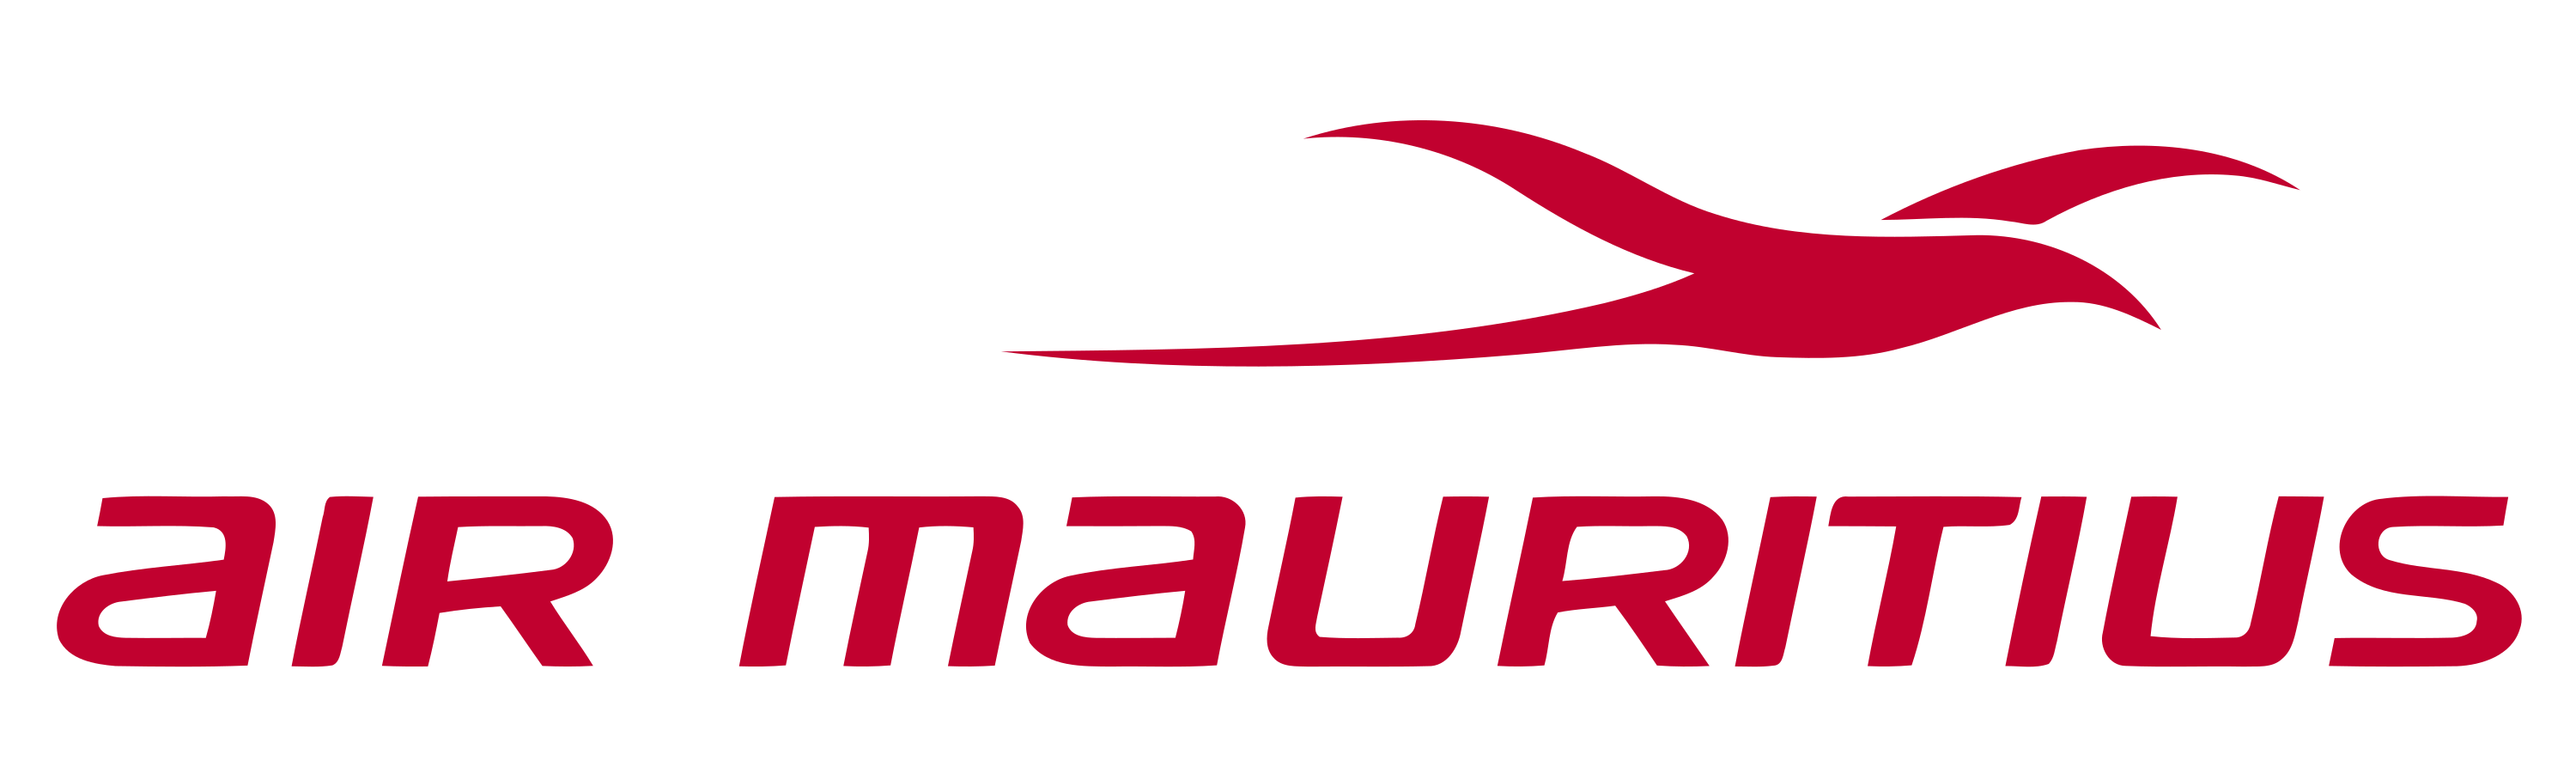 Air Mauritius logo, logotype